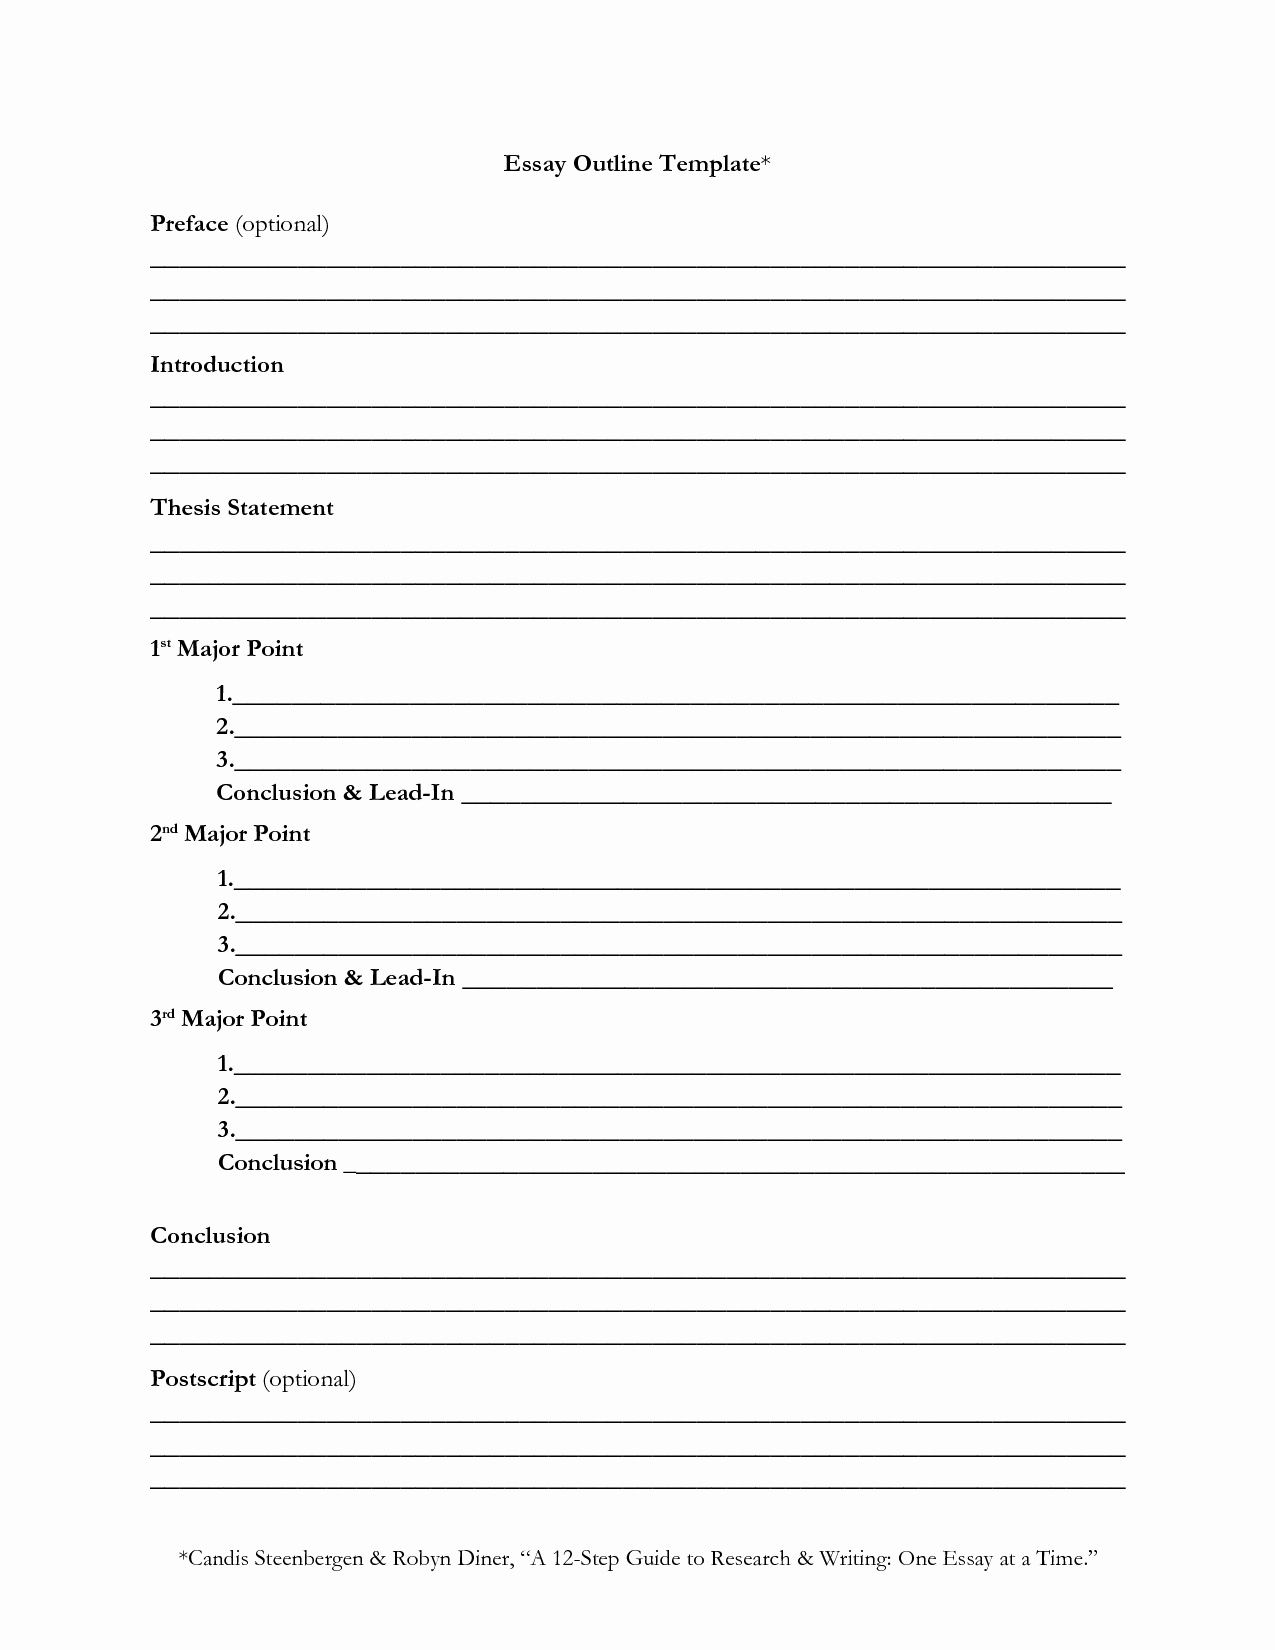 Argumentative Essay Outline Worksheet Inspirational How to Write An Essay Outline Worksheet How to Outline